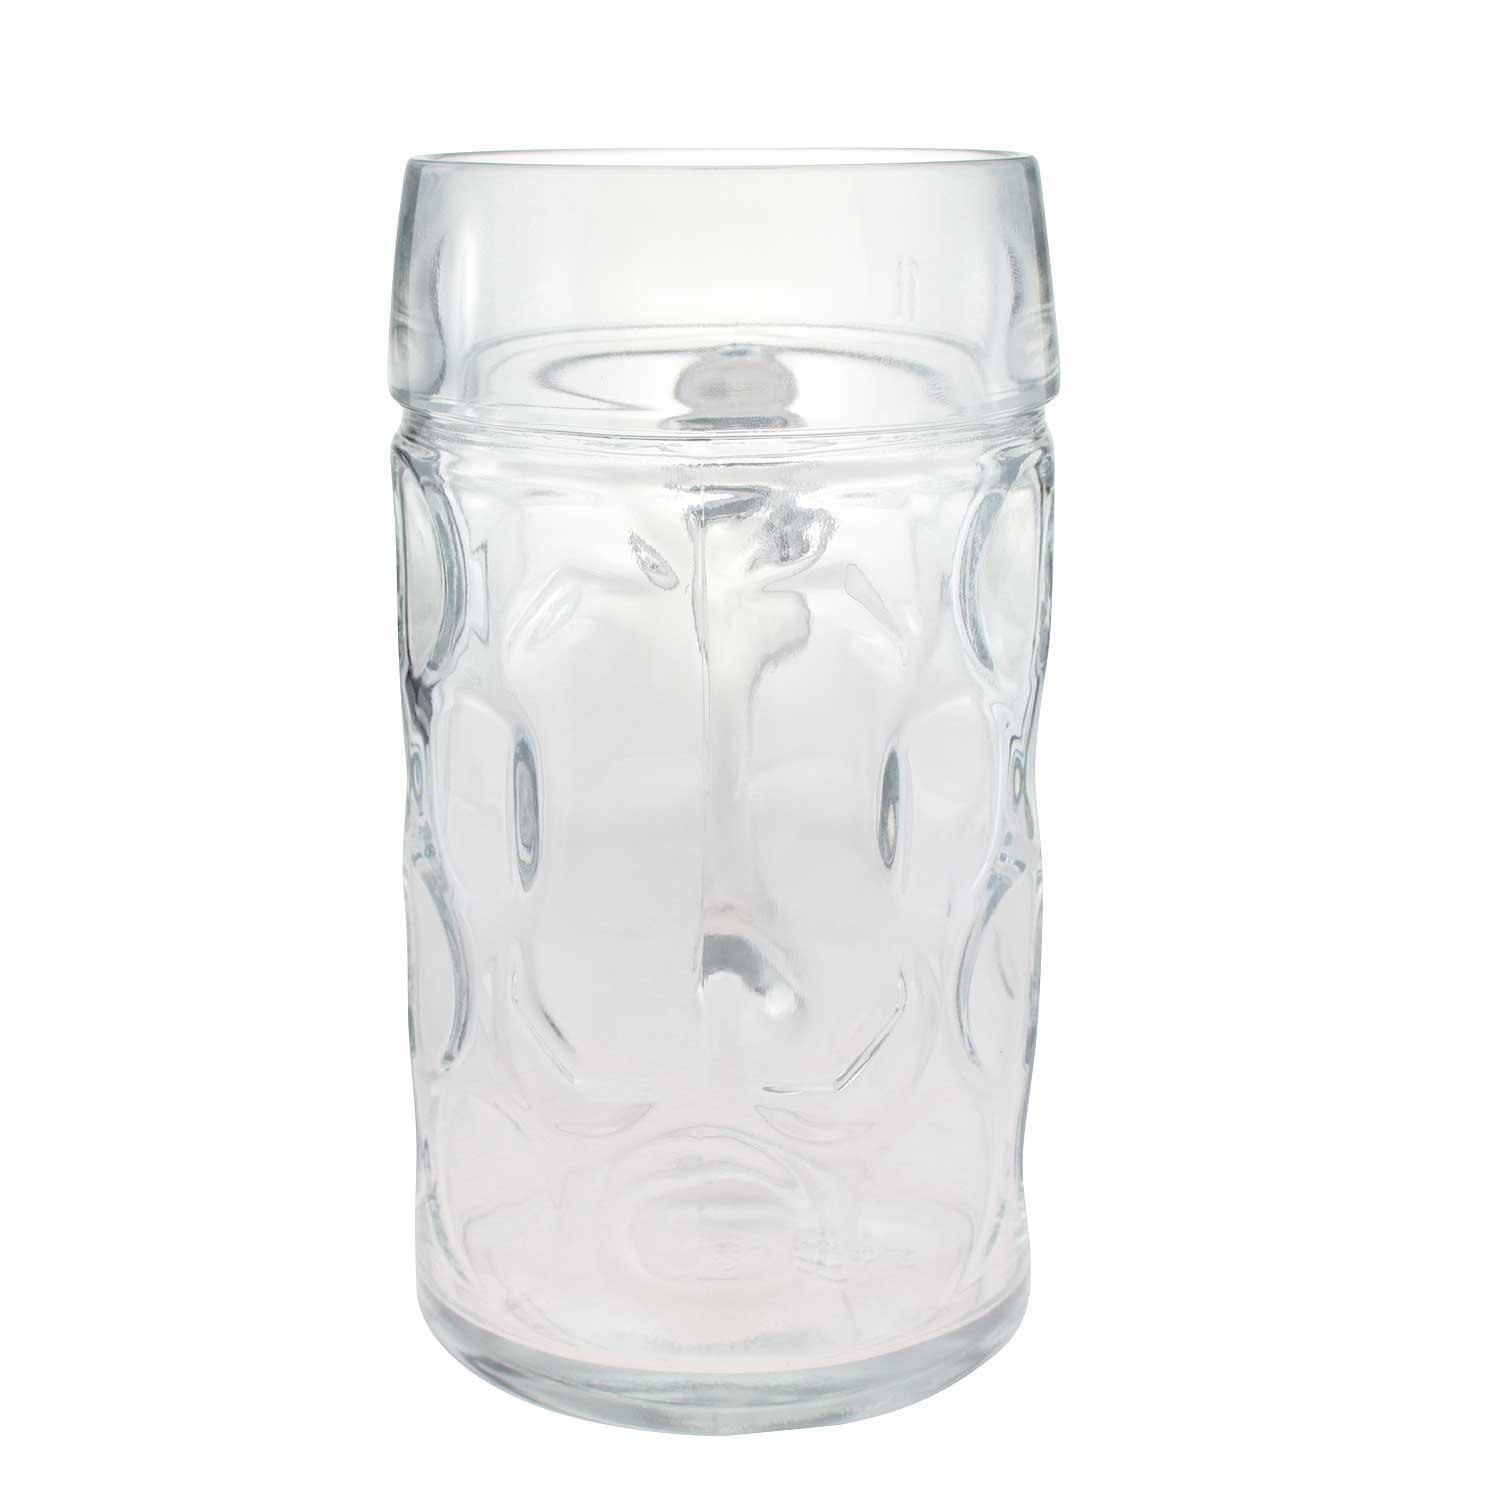 Glas Maßkrug ohne Dekoration - bavariashop - mei LebensGfui